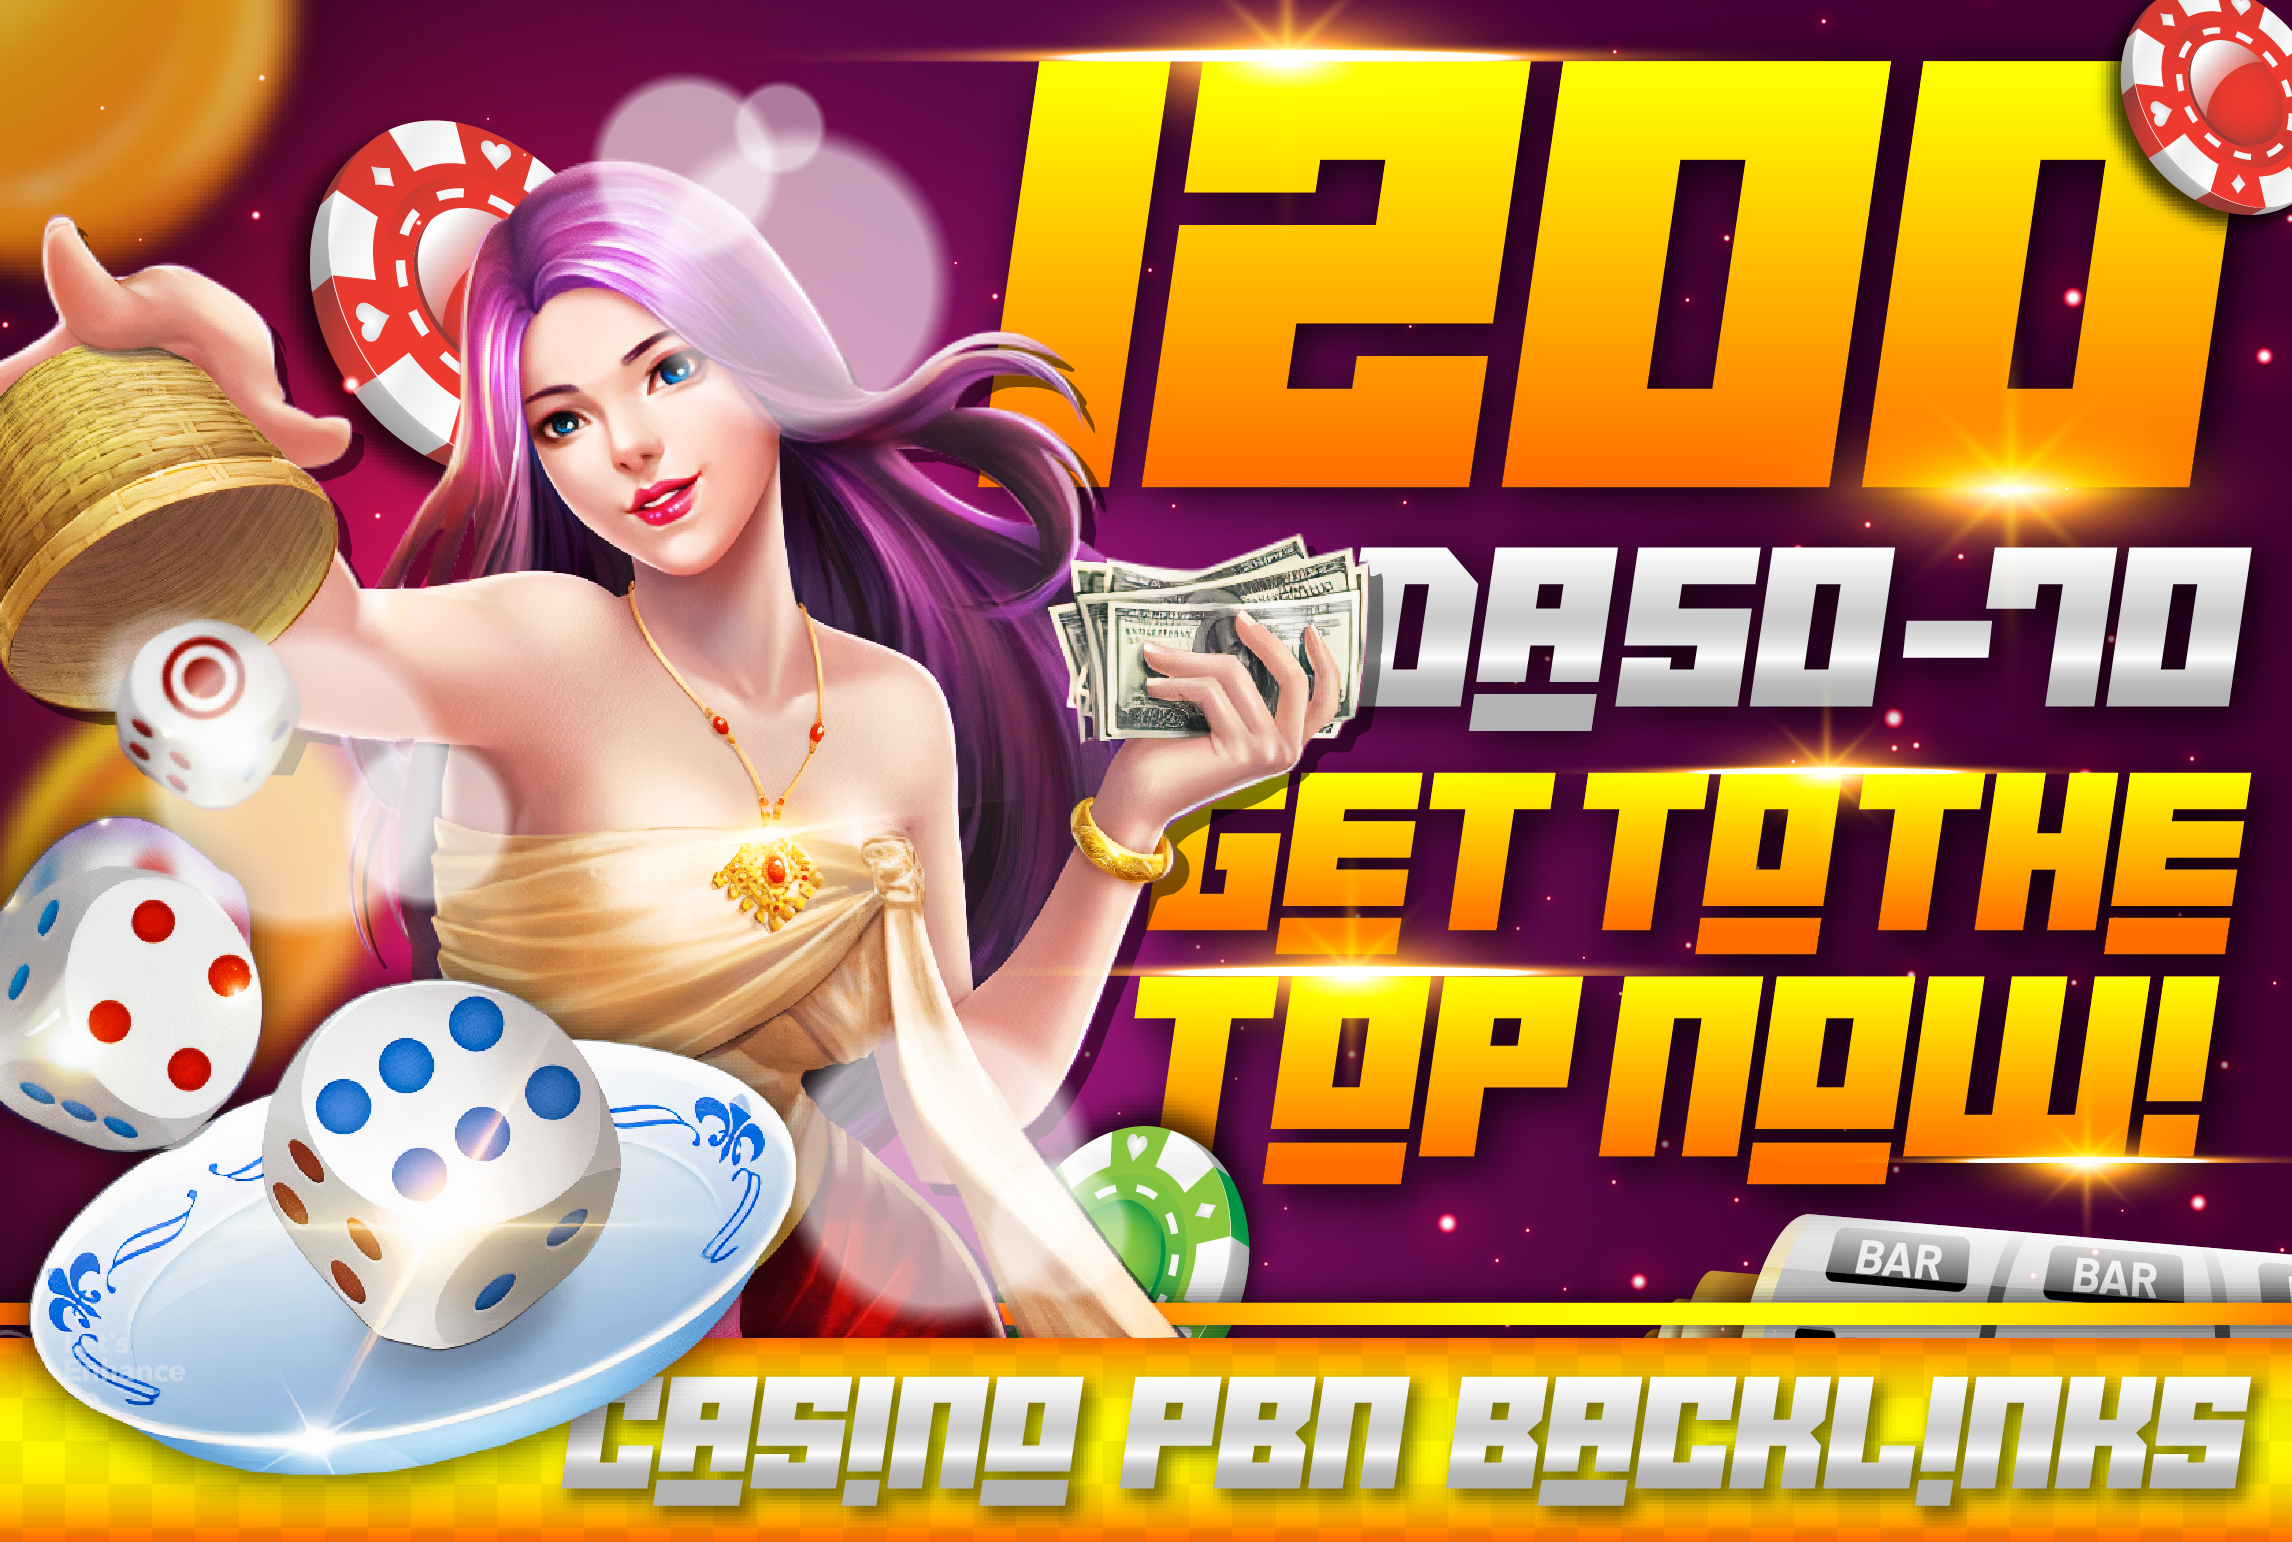 1200 DA 50-70+ Casino/Gambling/Poker Niche SEO PBN Backlinks - Get to the TOP NOW